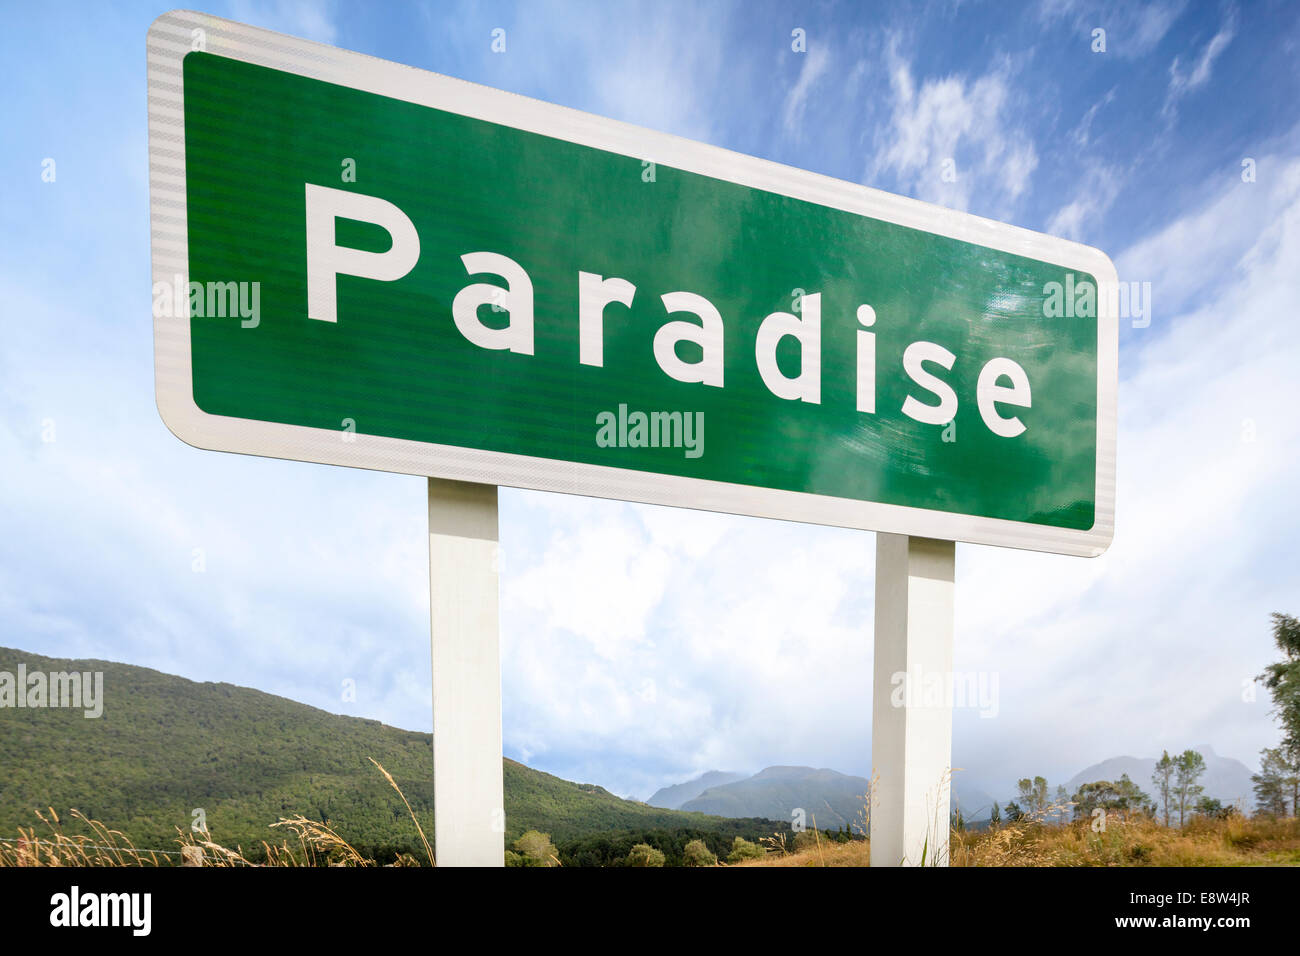 Le paradis est un endroit rural pastorale de la région de l'Otago en Nouvelle-Zélande Île du Sud. Panneau routier storm brewing dans la distance. Banque D'Images